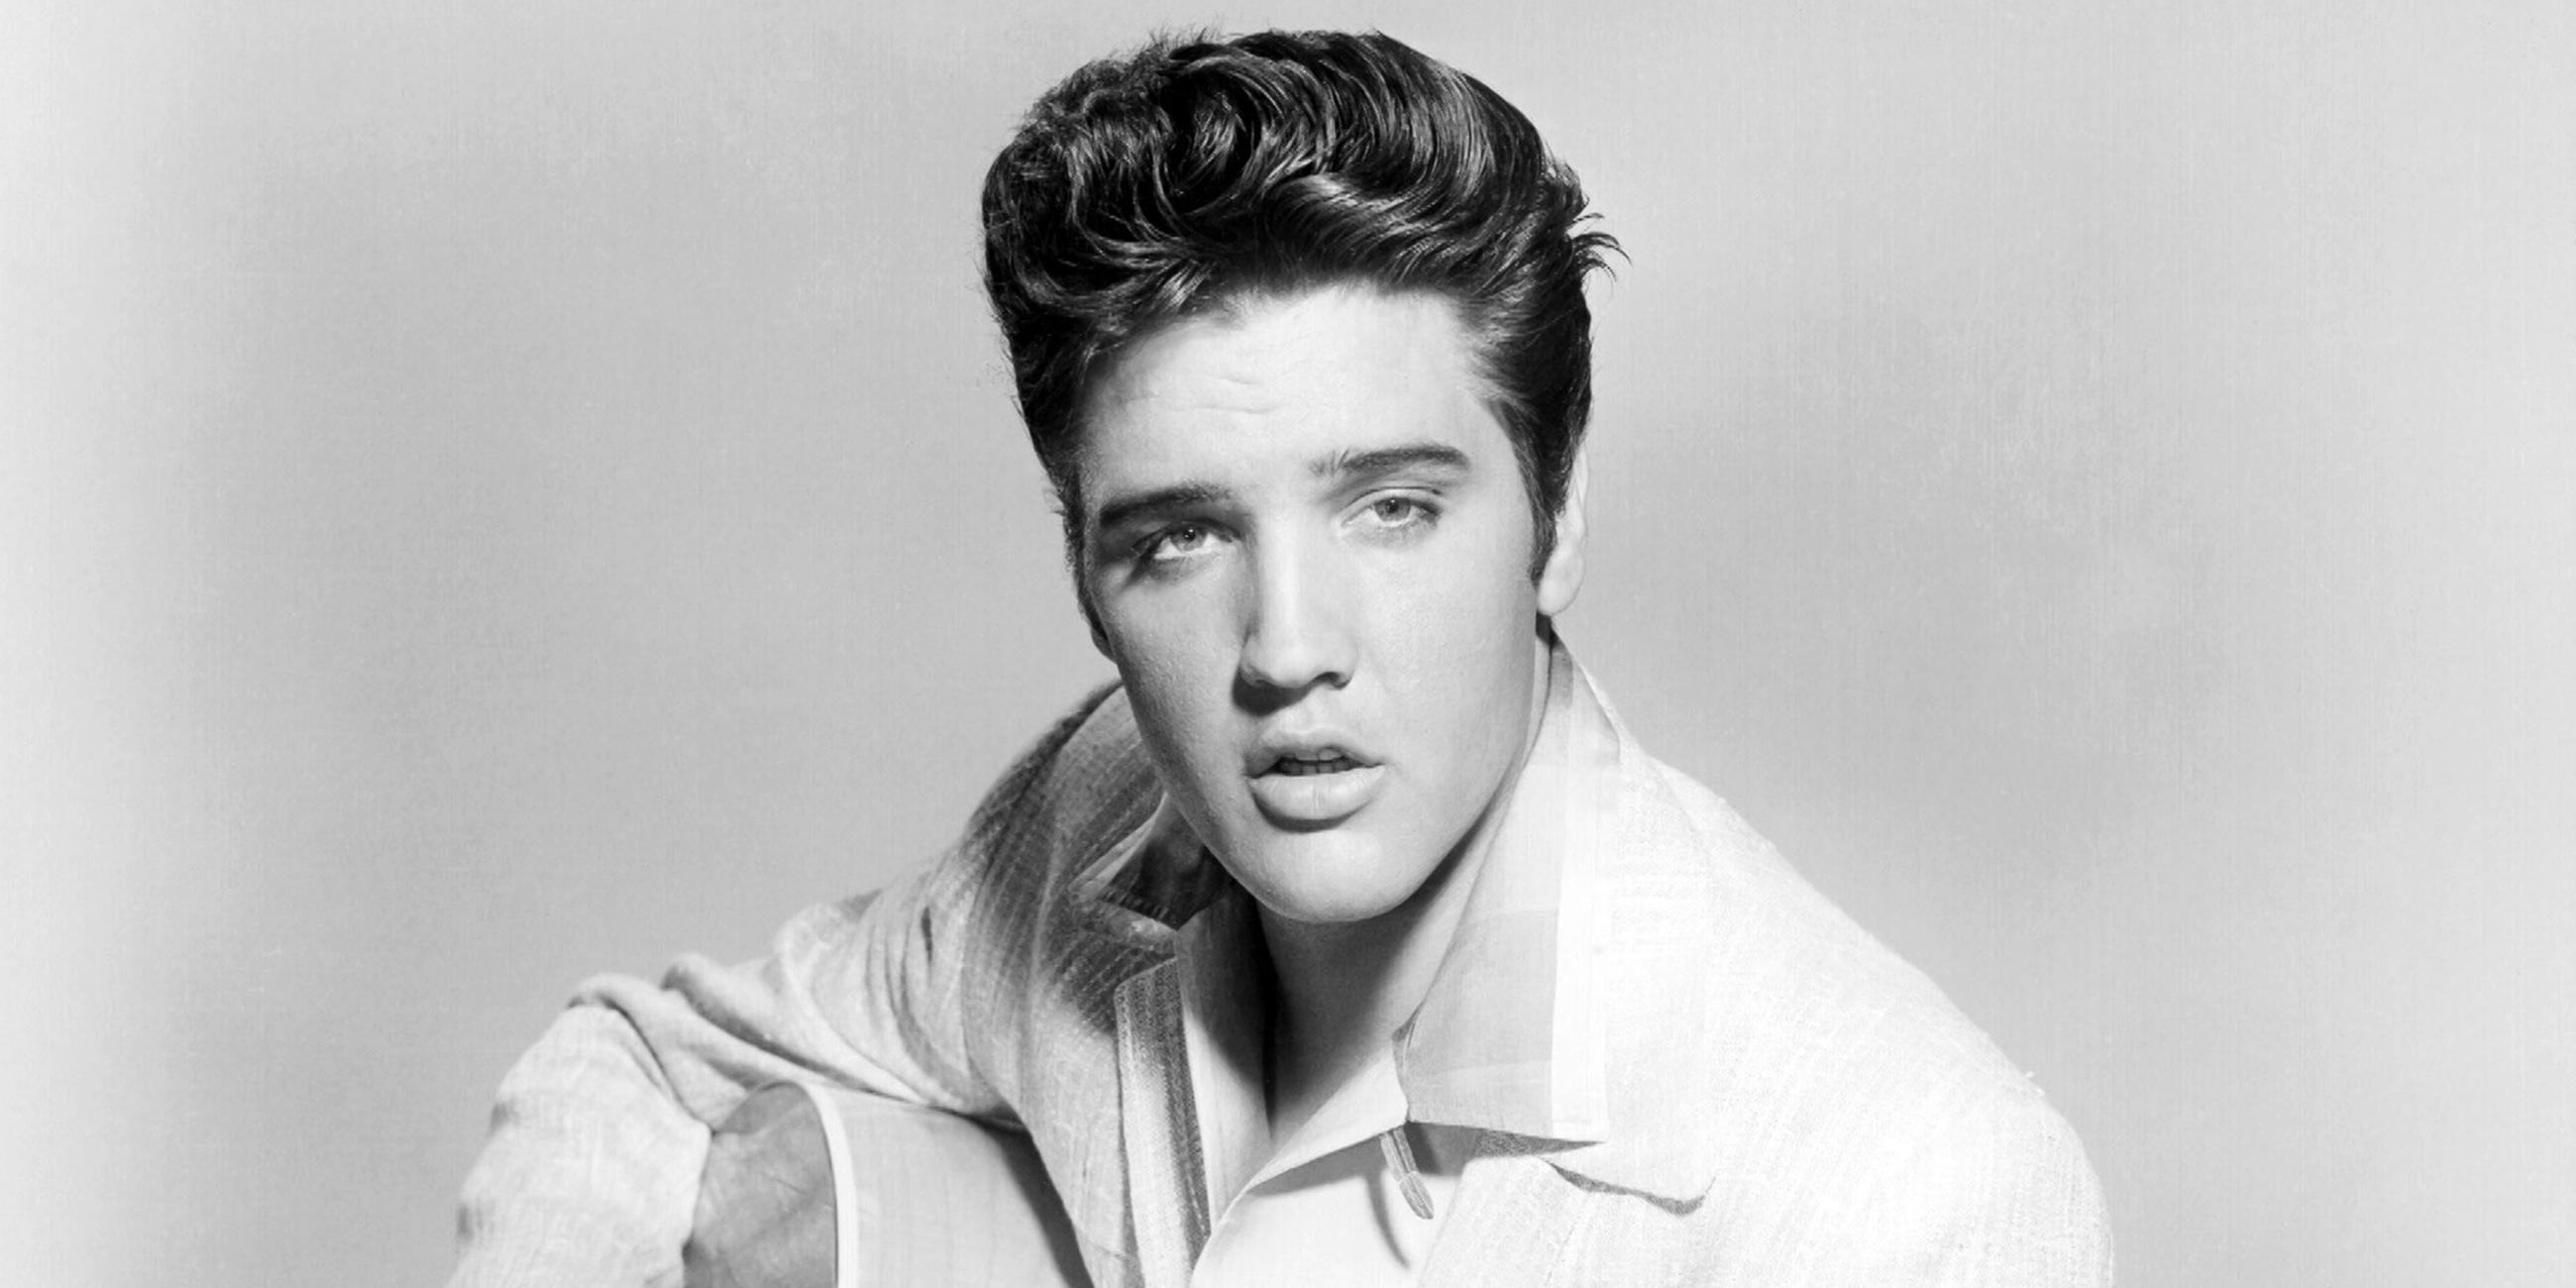  Schwarz-Weiß-Foto des jungen Elvis Presley mit Tolle und weißem Sakko. Er hält eine Akustikgitarre im Arm.